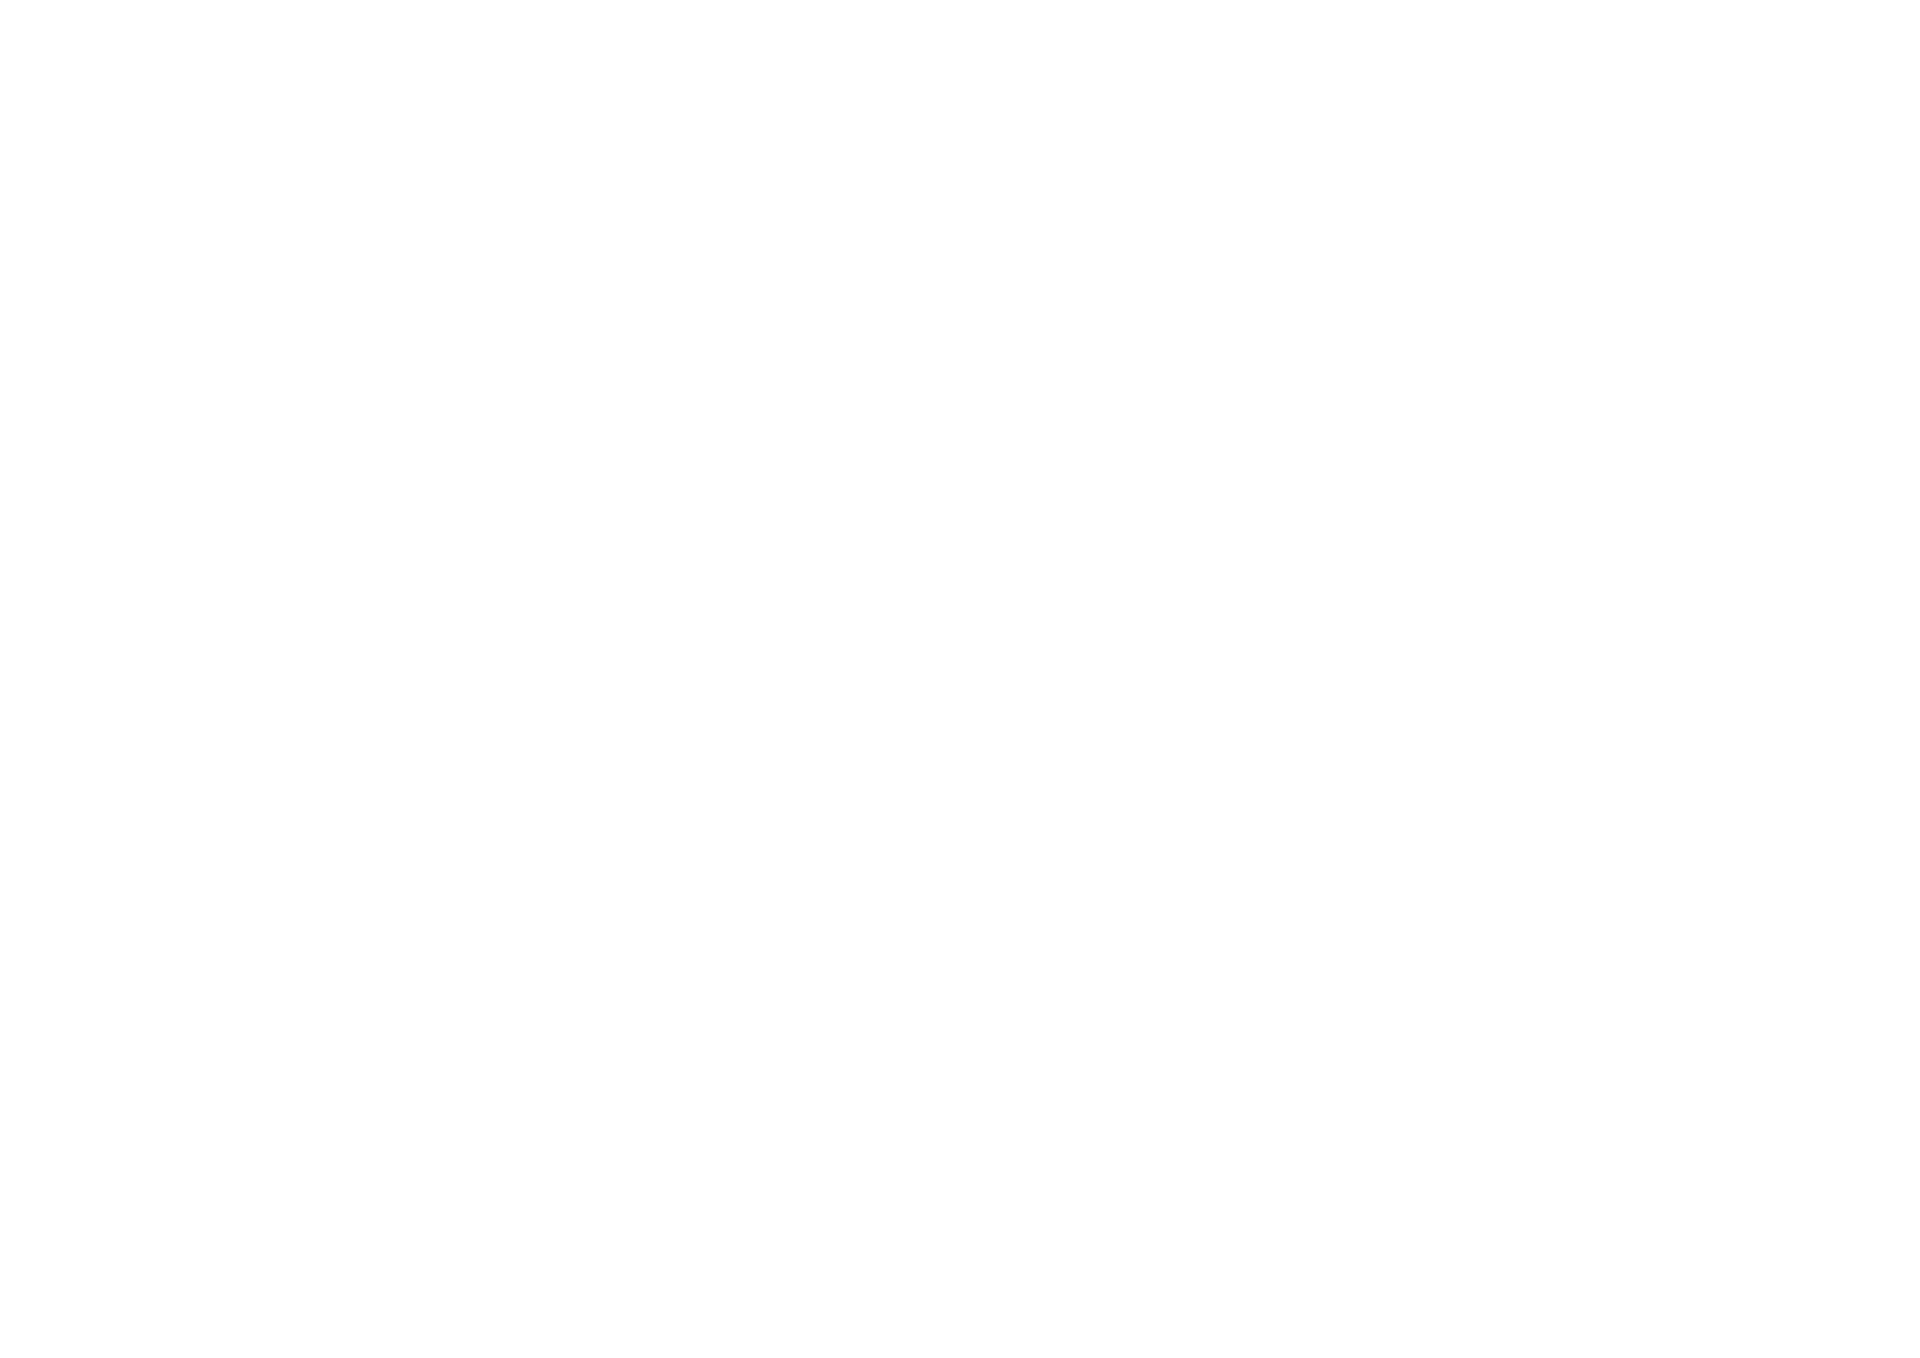 go-e Logotipo blanco